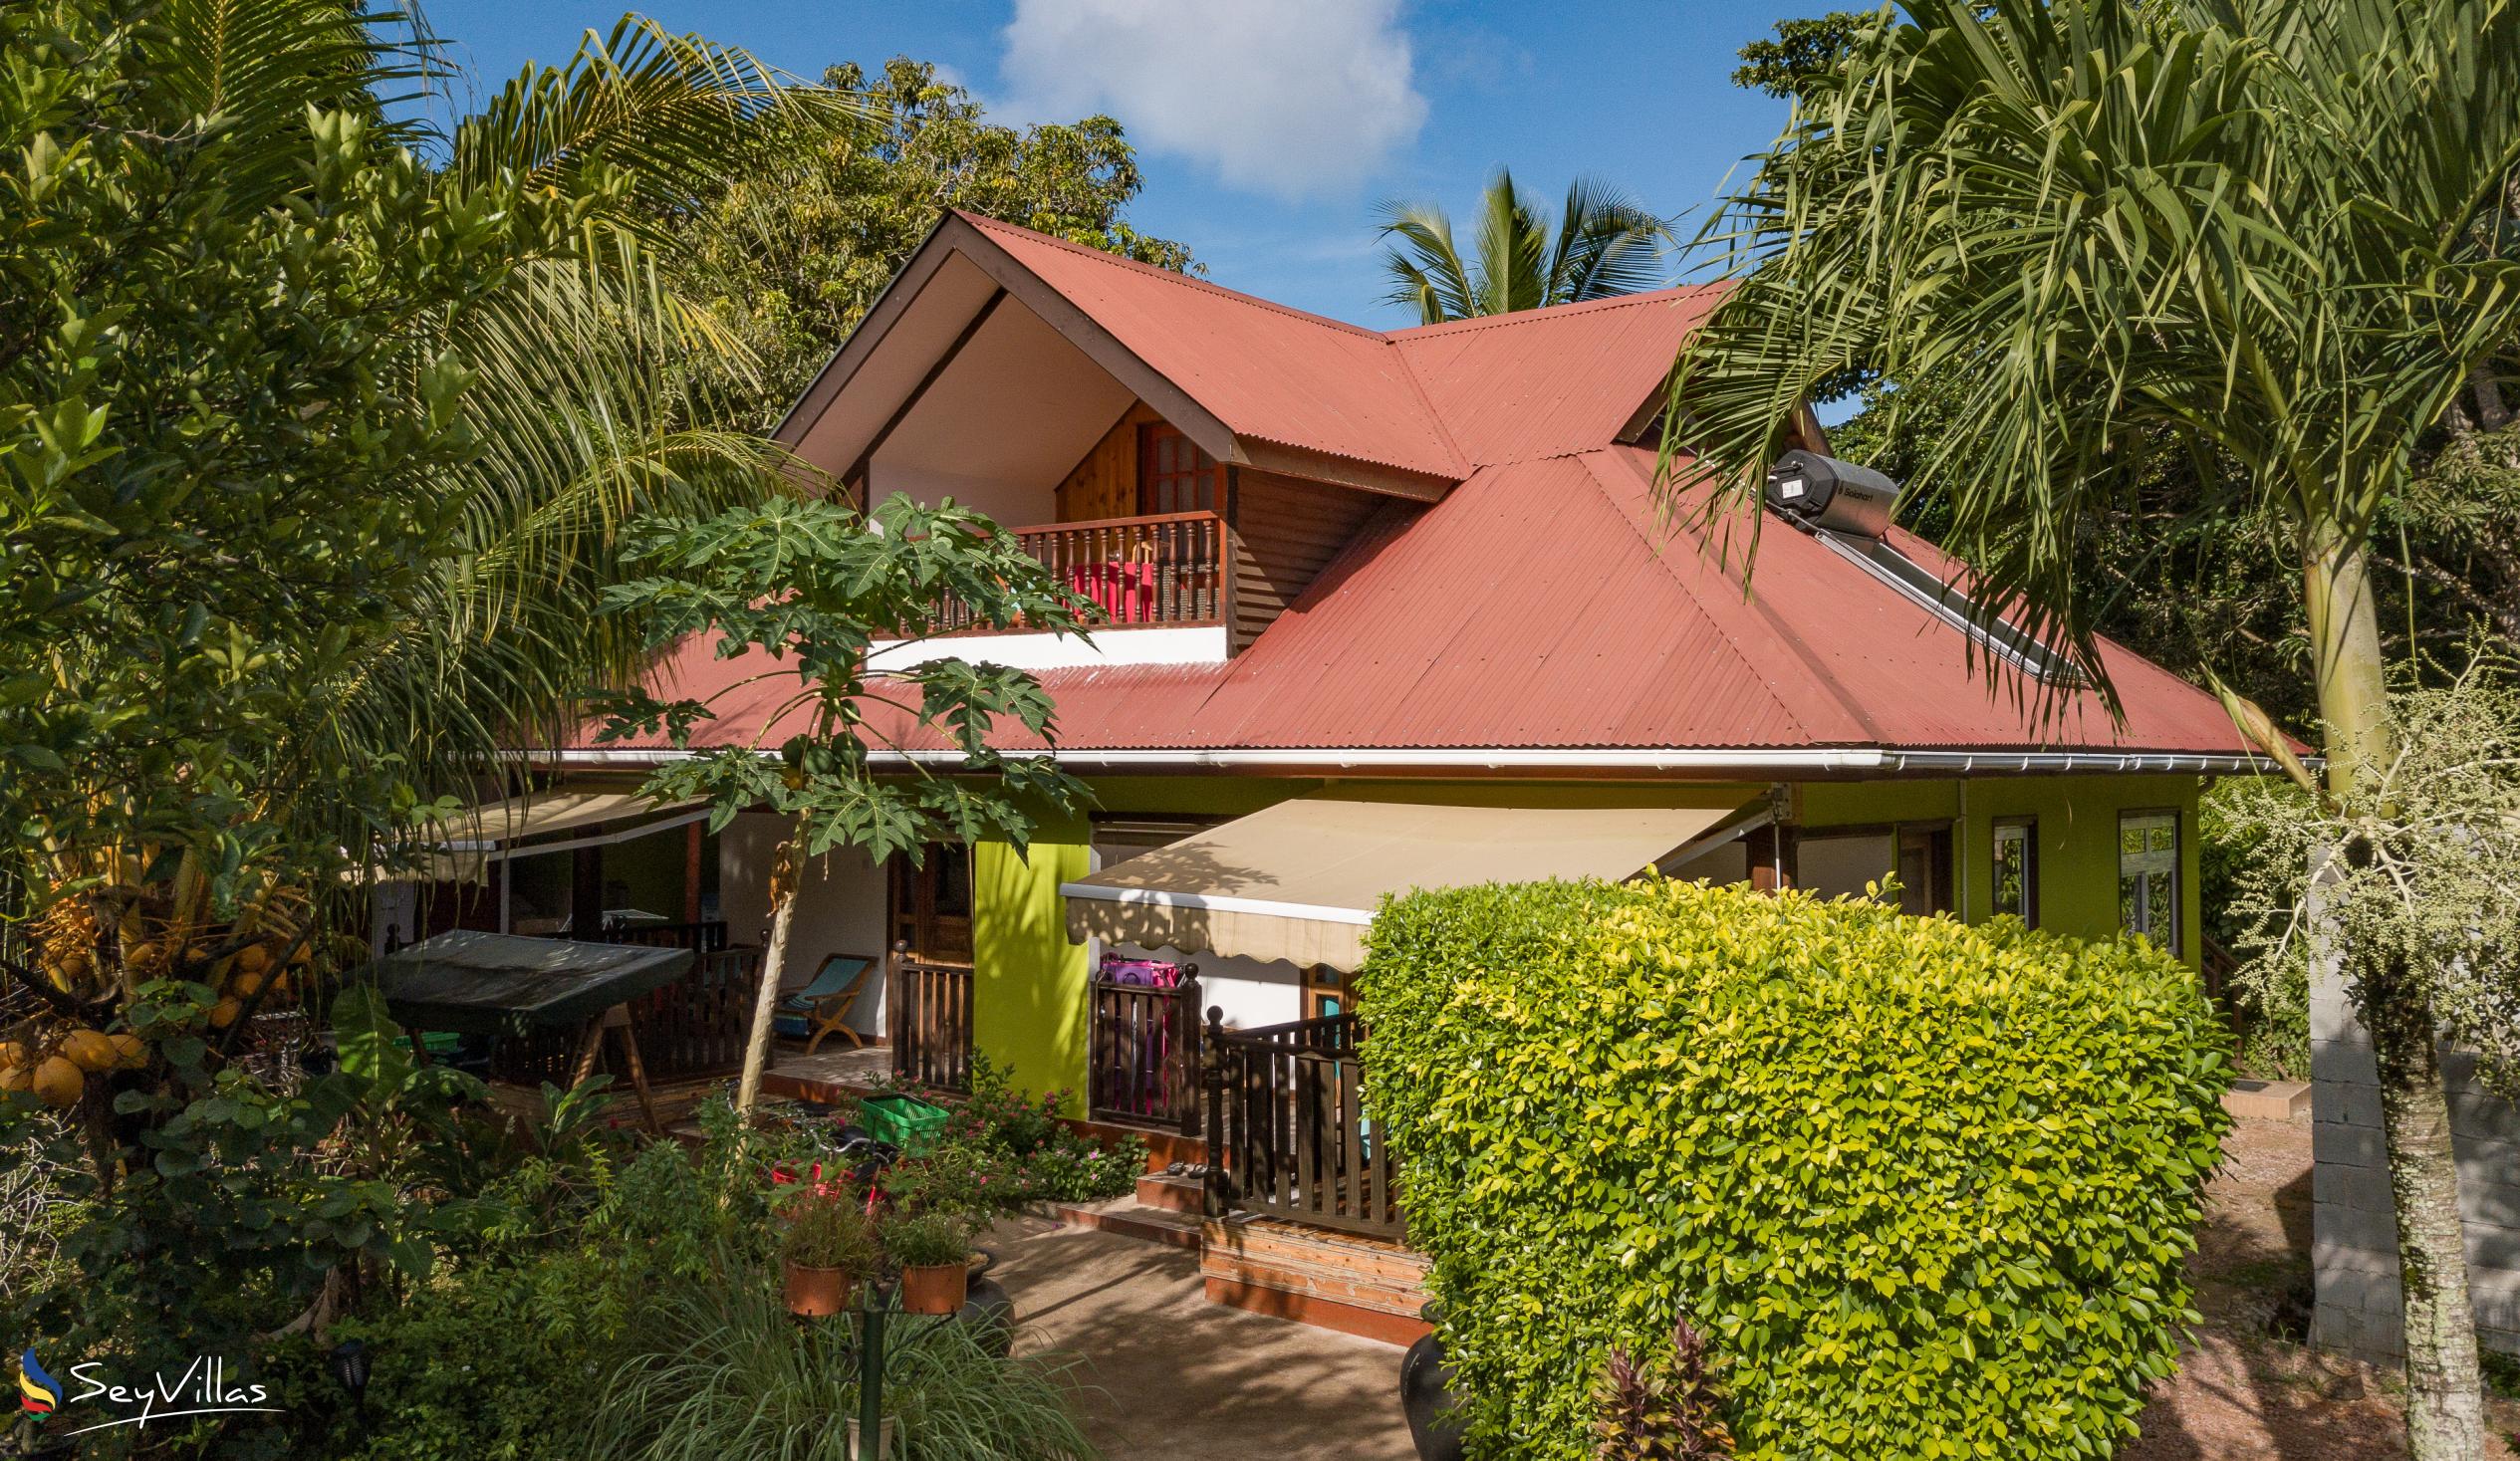 Photo 1: Chloe's Cottage - Outdoor area - La Digue (Seychelles)